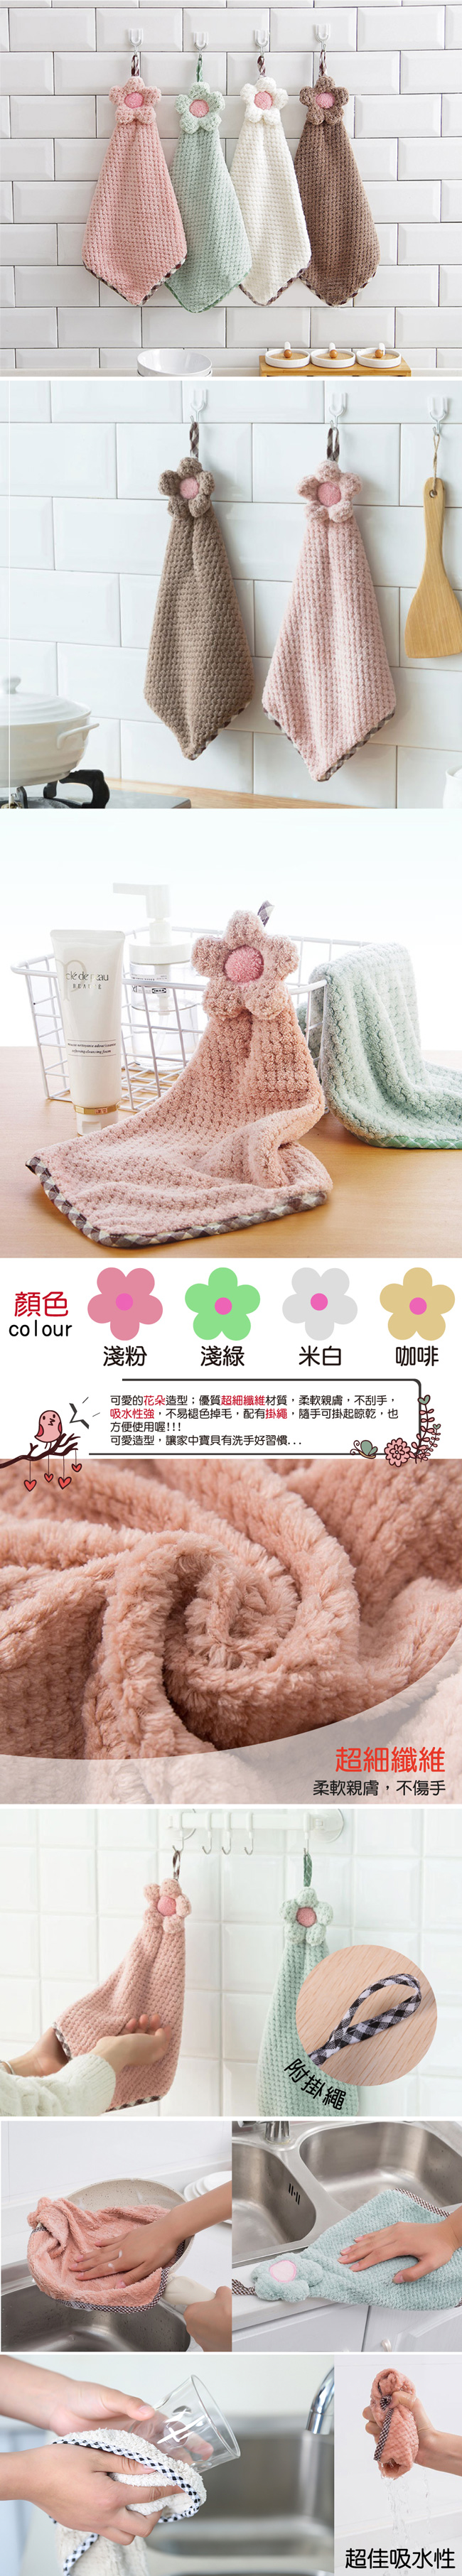 【G+居家】超細纖維造型擦手巾(小花格紋-淺綠)